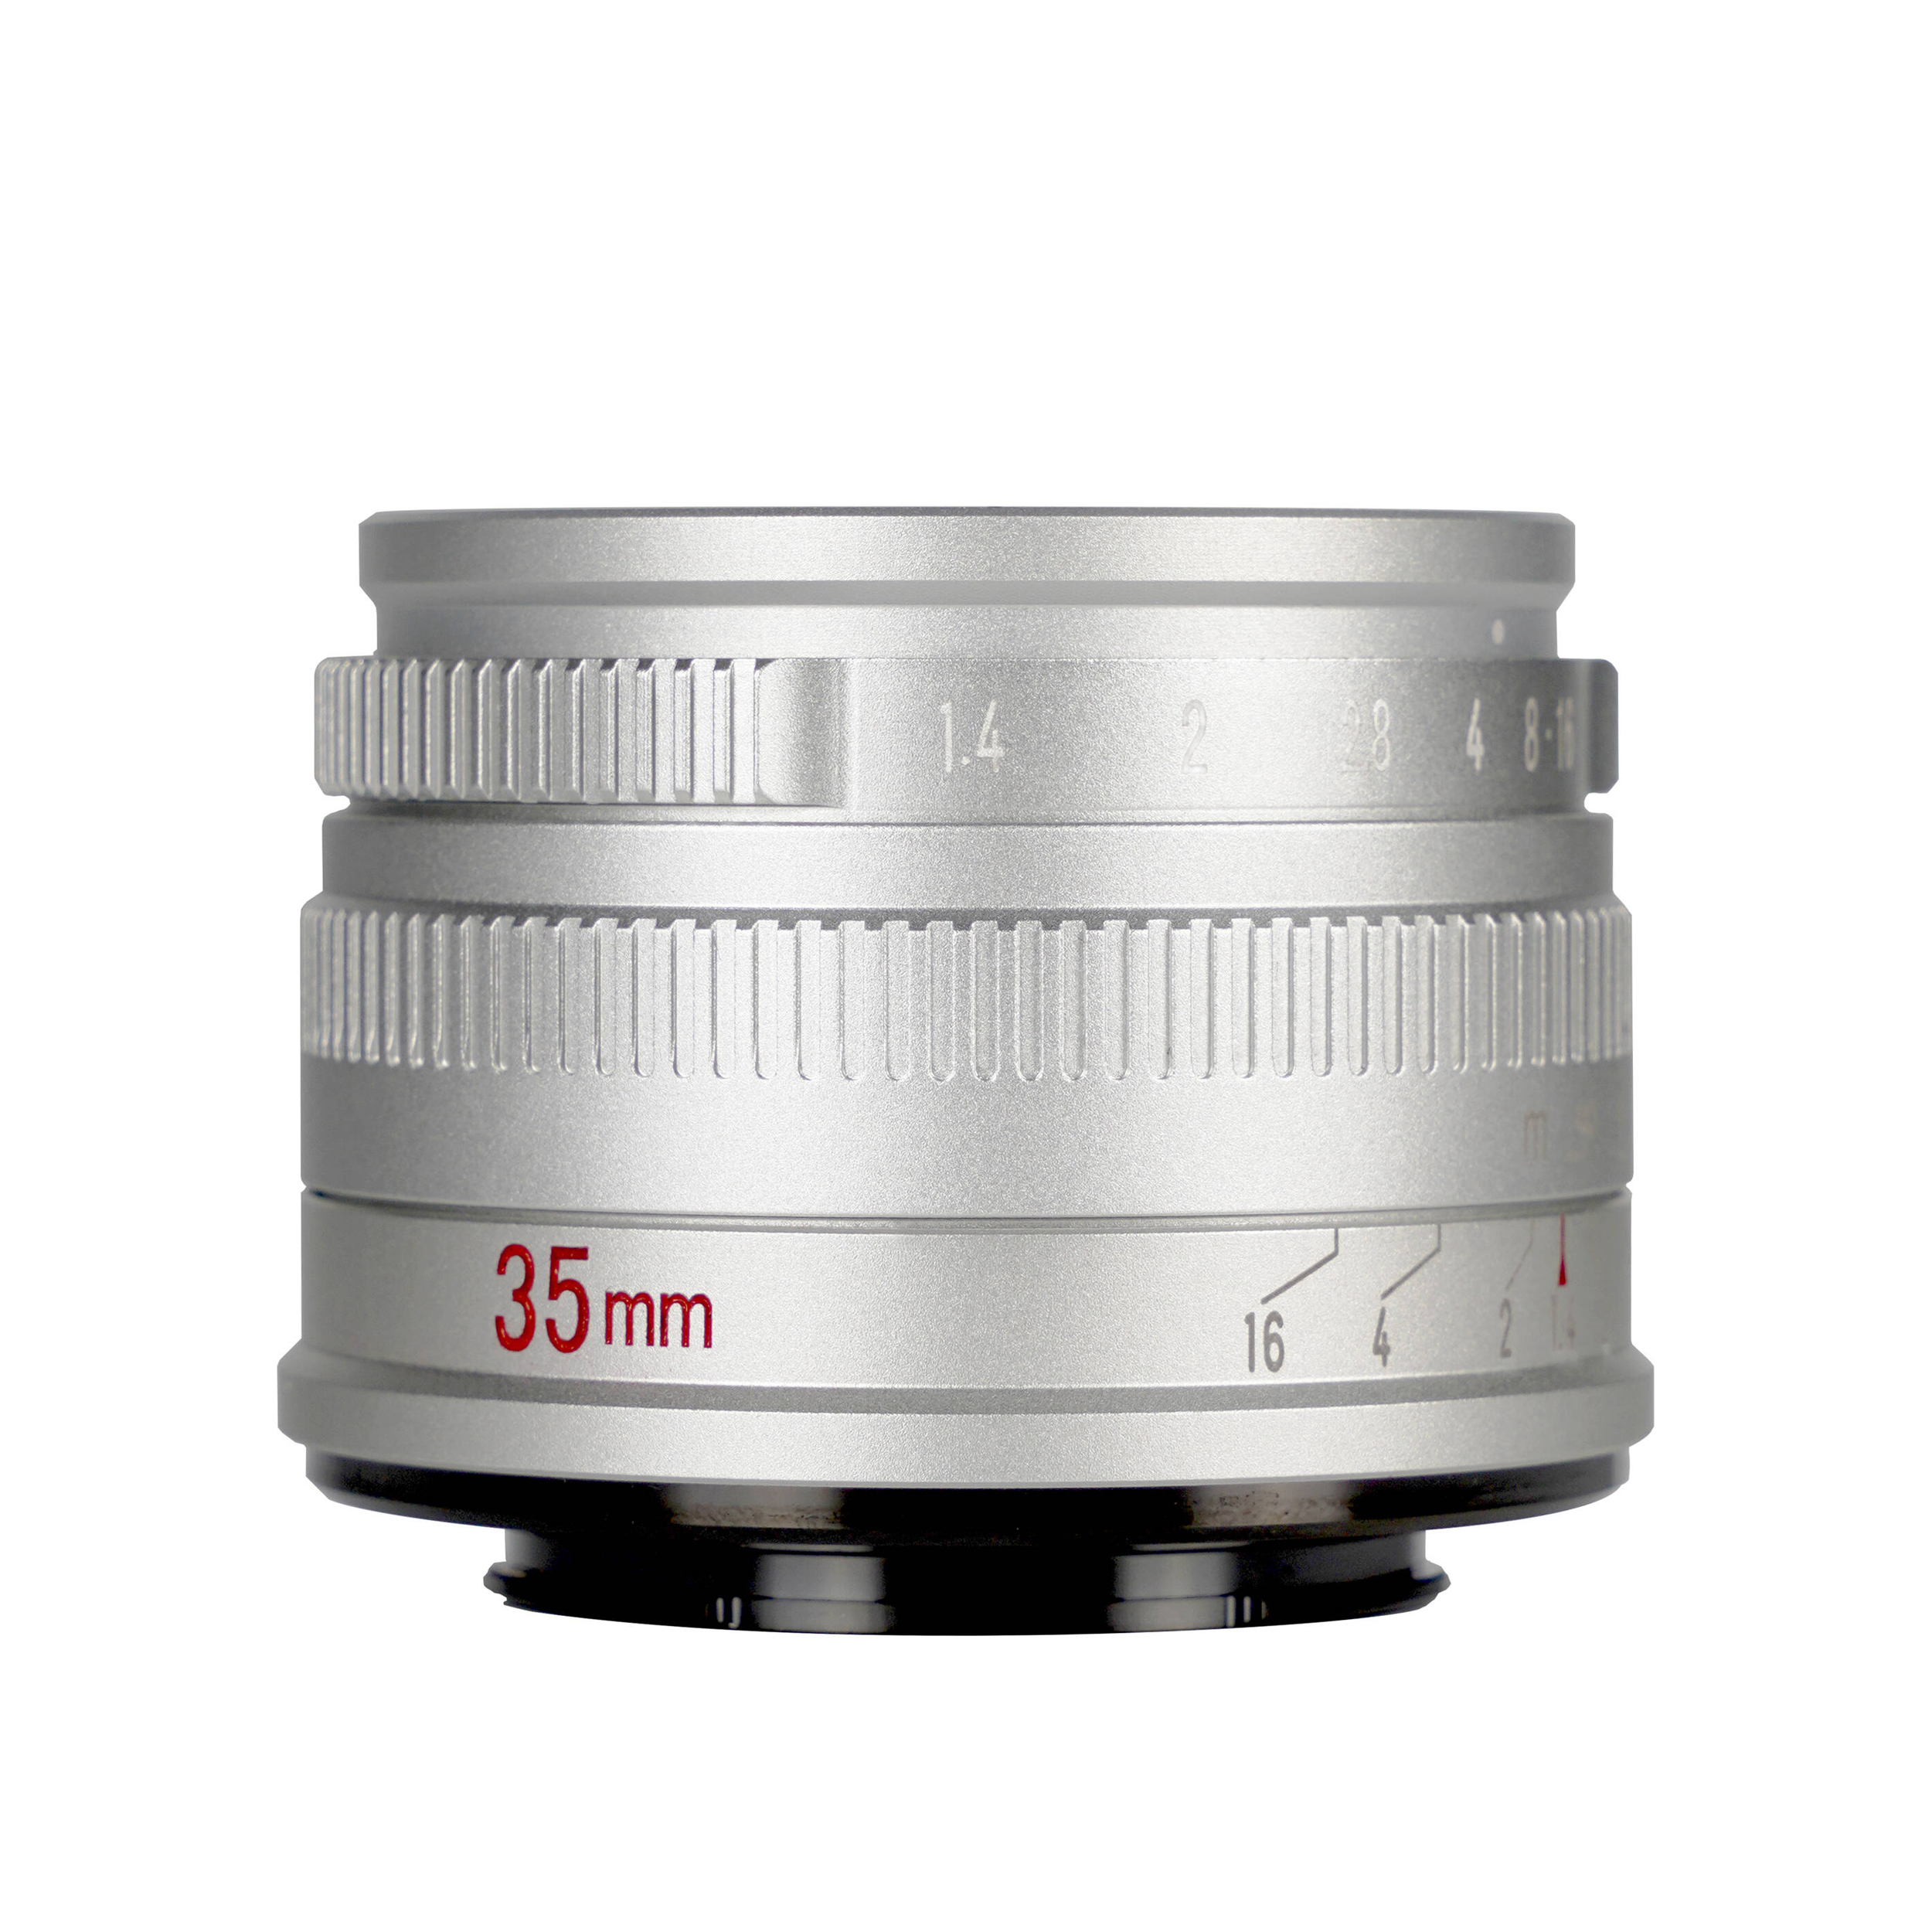 7artisans Photoelectric 35mm f/1.4 Lens for Sony E Mount